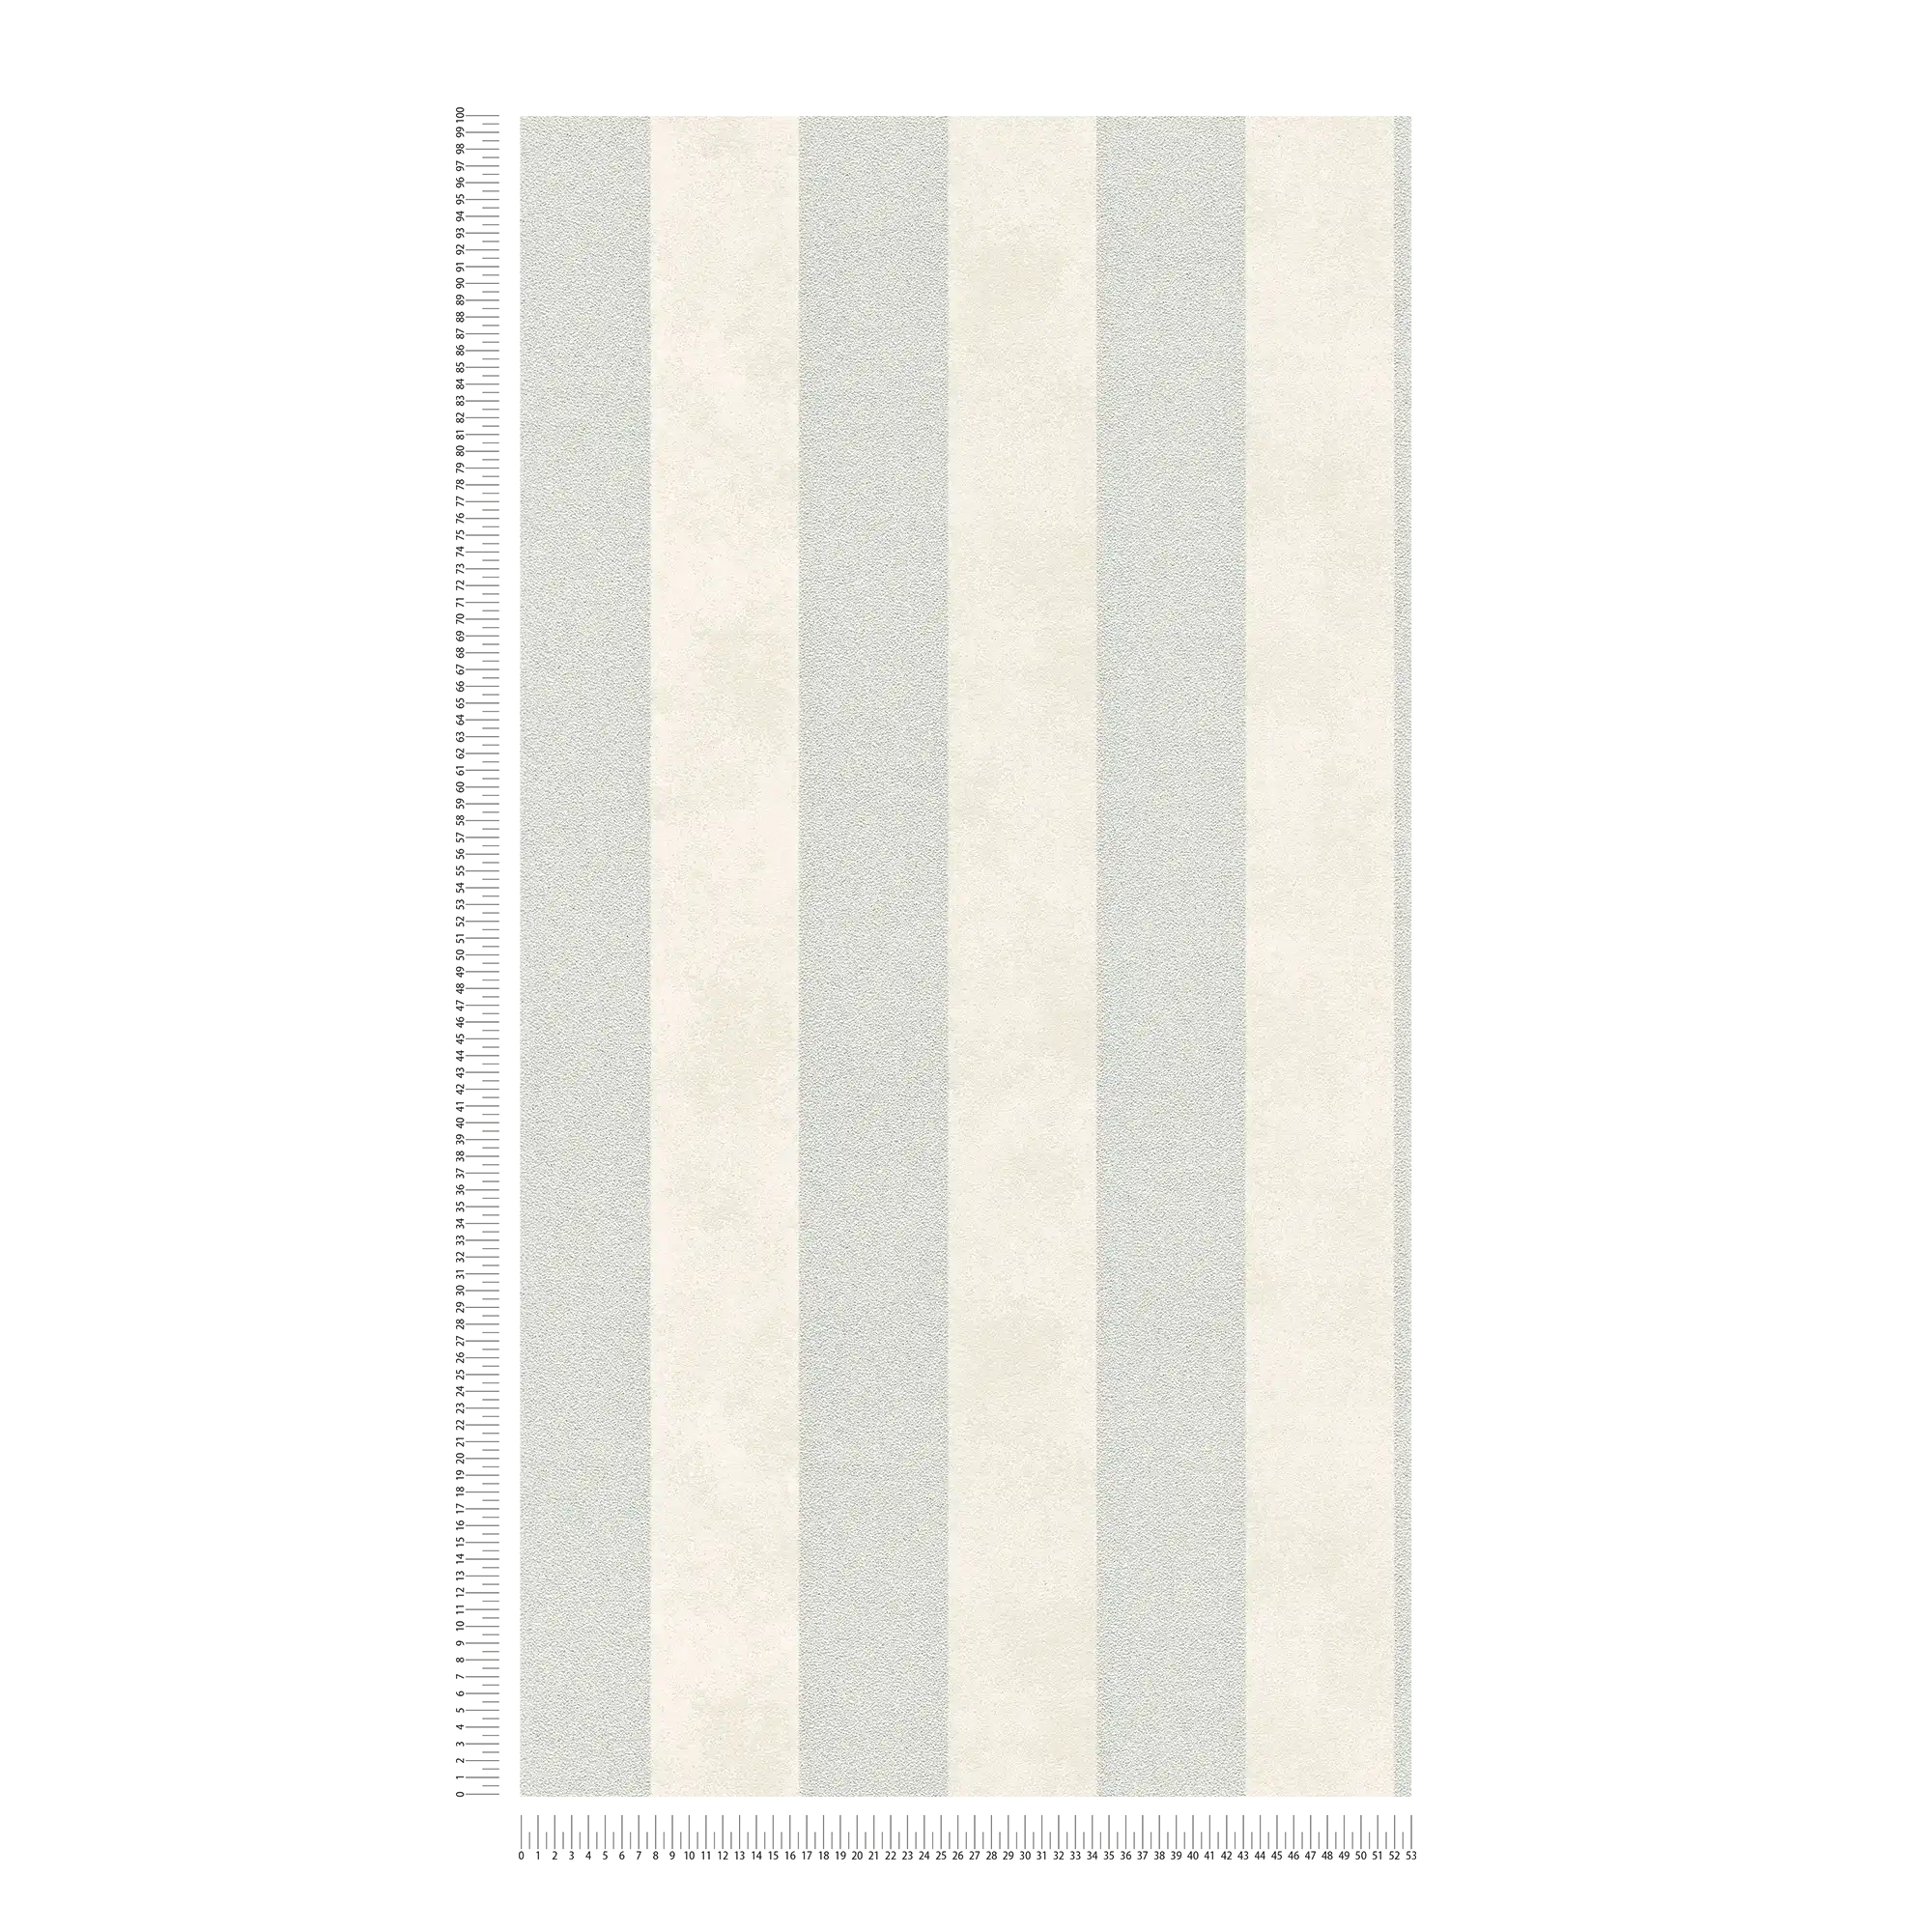             Papier peint à rayures en bloc avec motifs colorés et texturés - argenté, gris, blanc
        